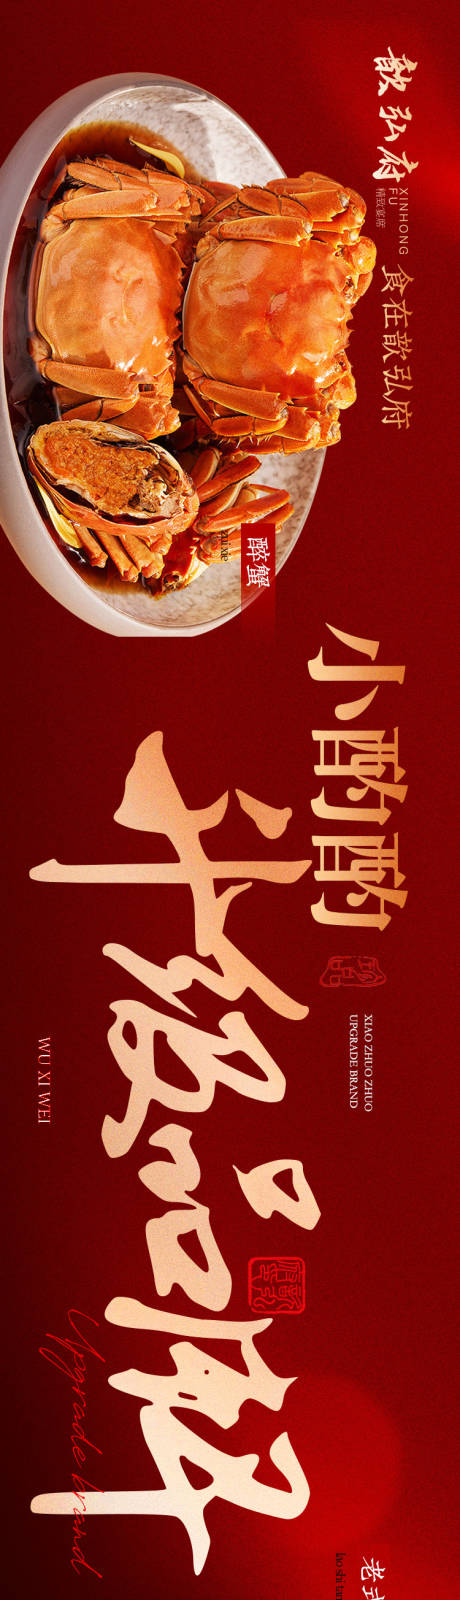 新中式餐饮五连图